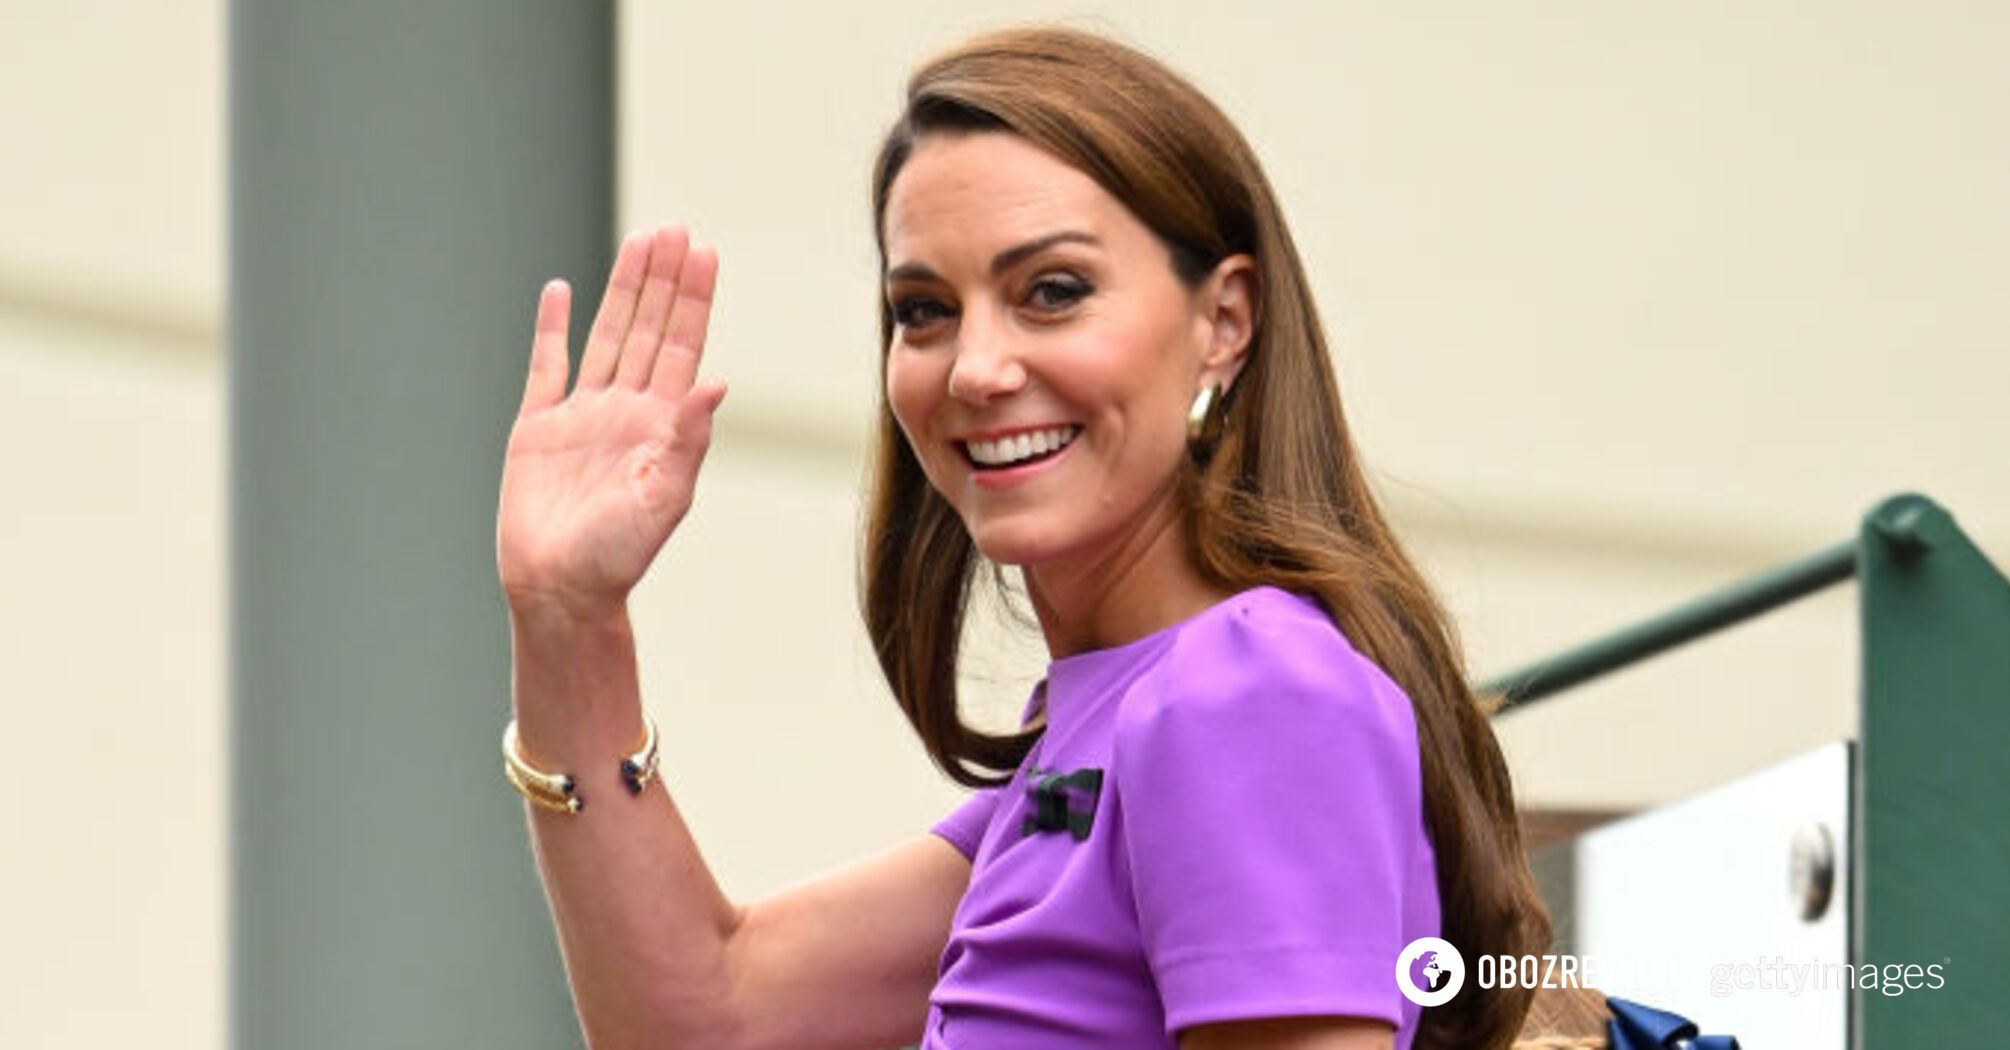 Uśmiechnięta i w eleganckiej stylizacji: Kate Middleton pojawiła się publicznie z córką Charlotte. Zdjęcie